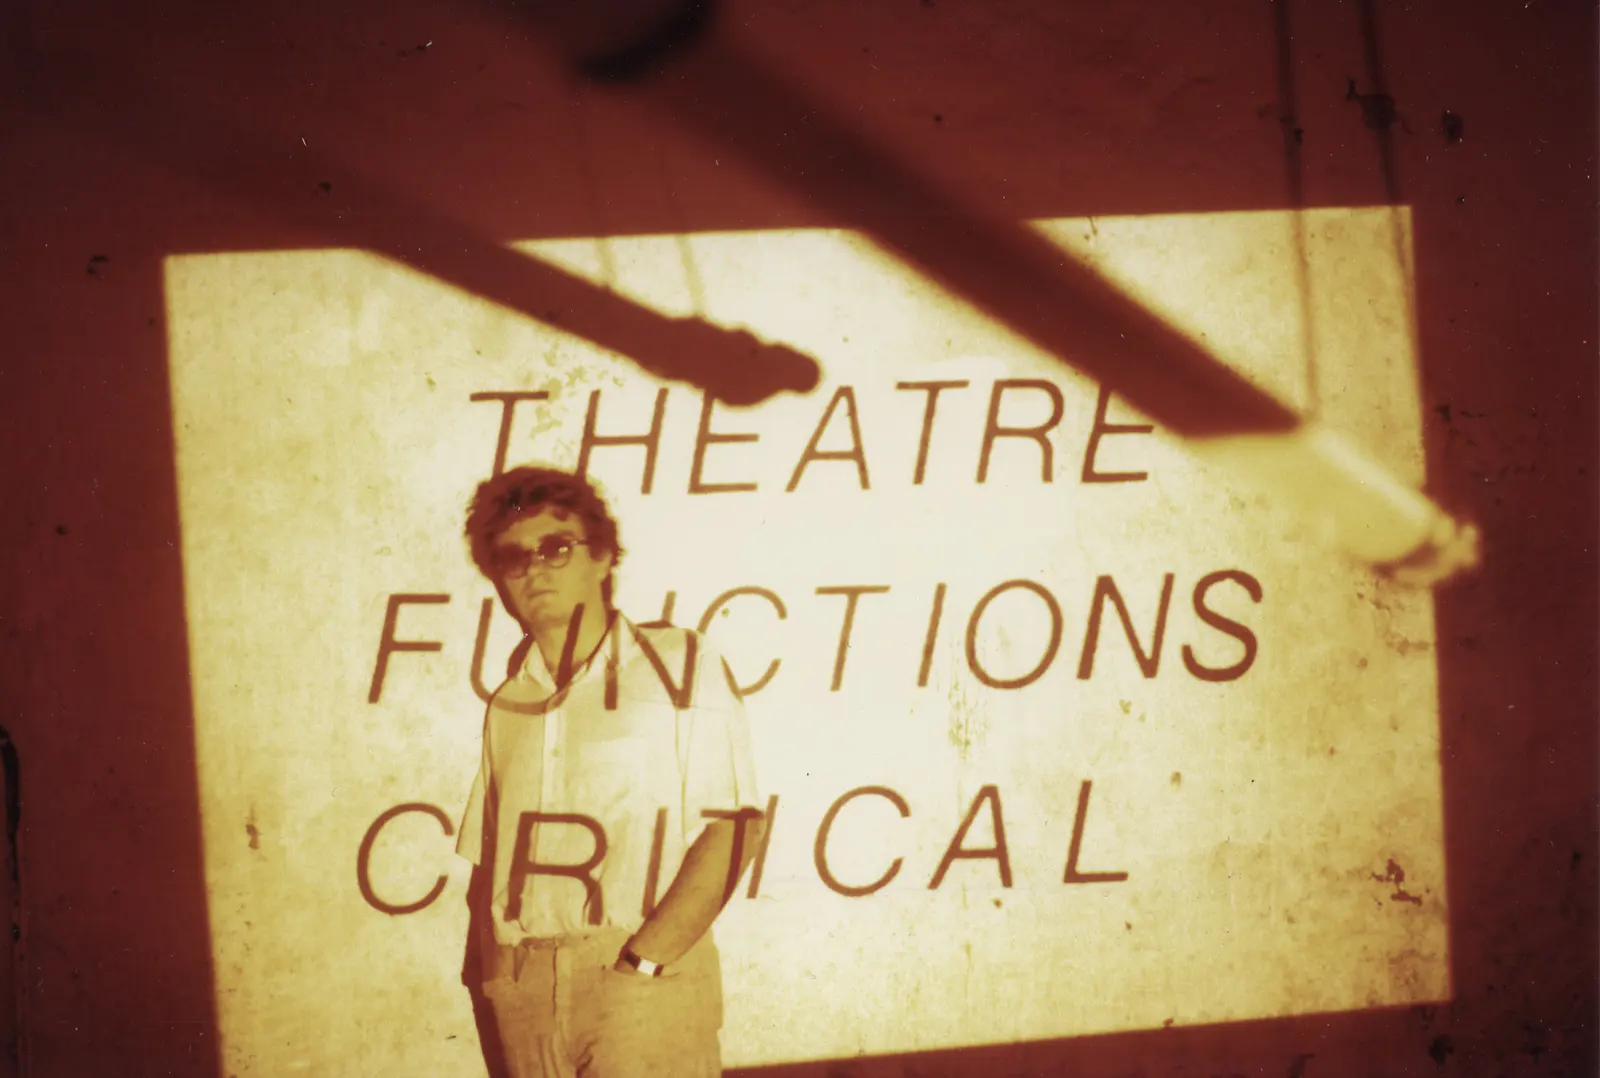 Falso Movimento, Theatre Functions Critical, Beat 72, Roma 1979. In foto Mario Martone. Archivio Mario Martone.